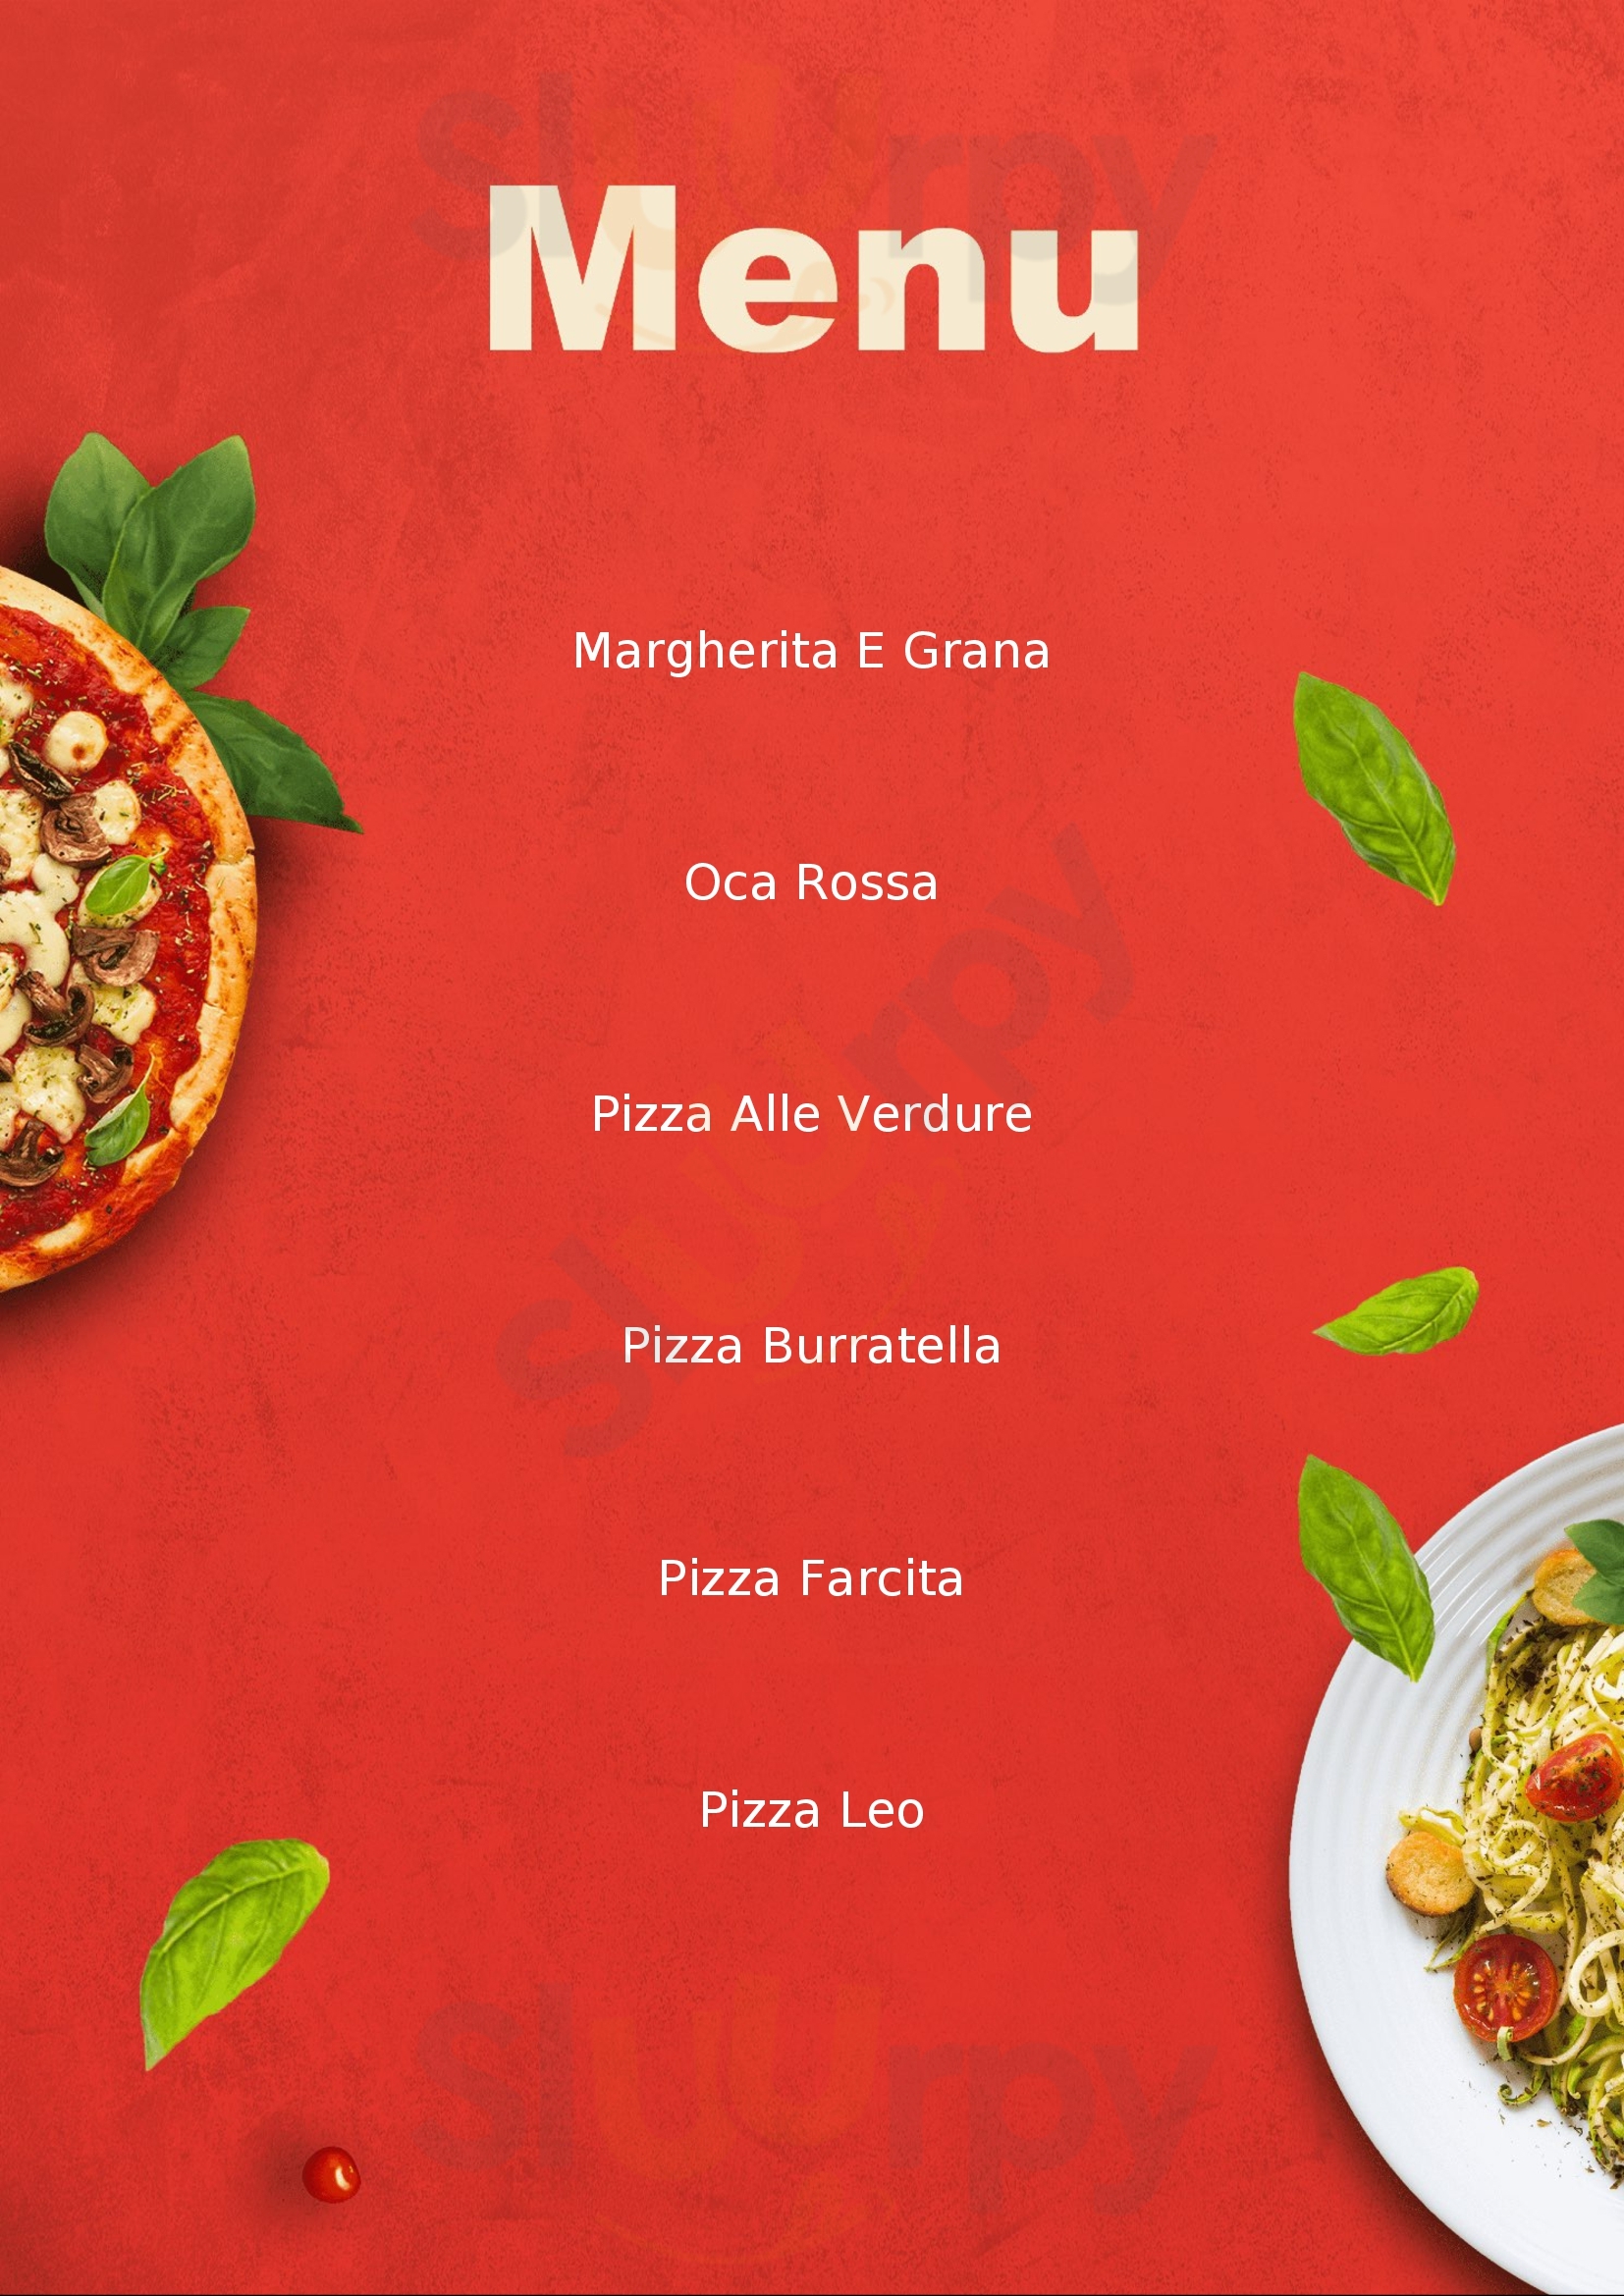 Lele's Pizza Palazzolo dello Stella menù 1 pagina